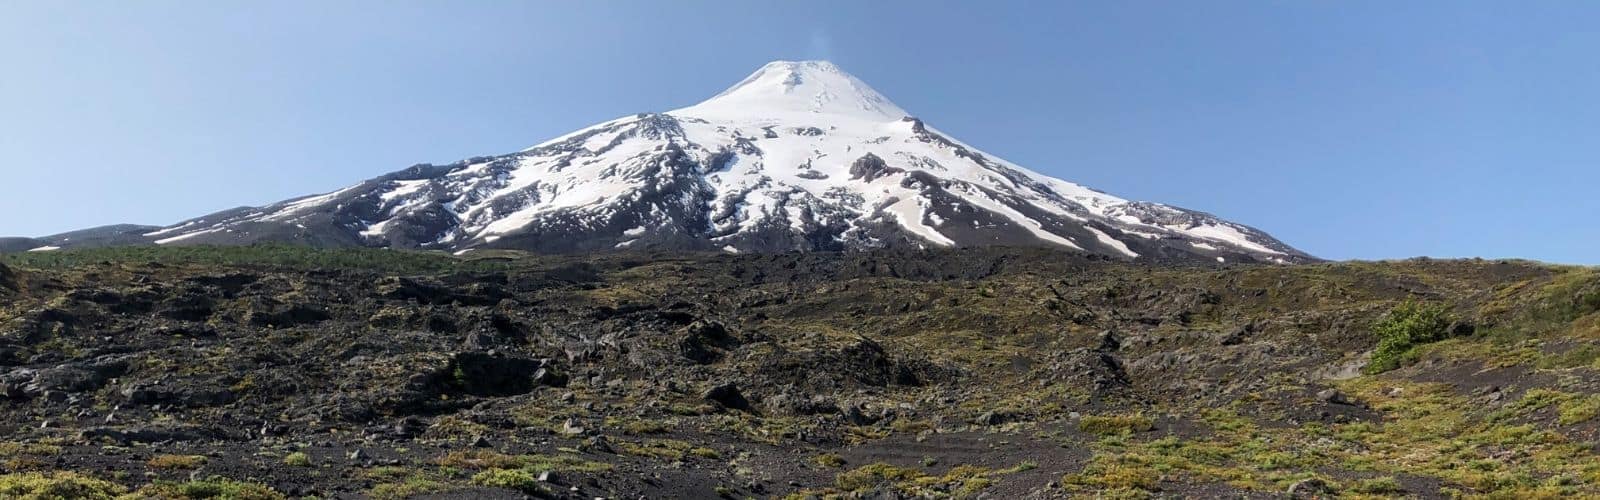 Una imagen del Volcán Rukapillan, una majestuosa montaña cubierta de nieve.